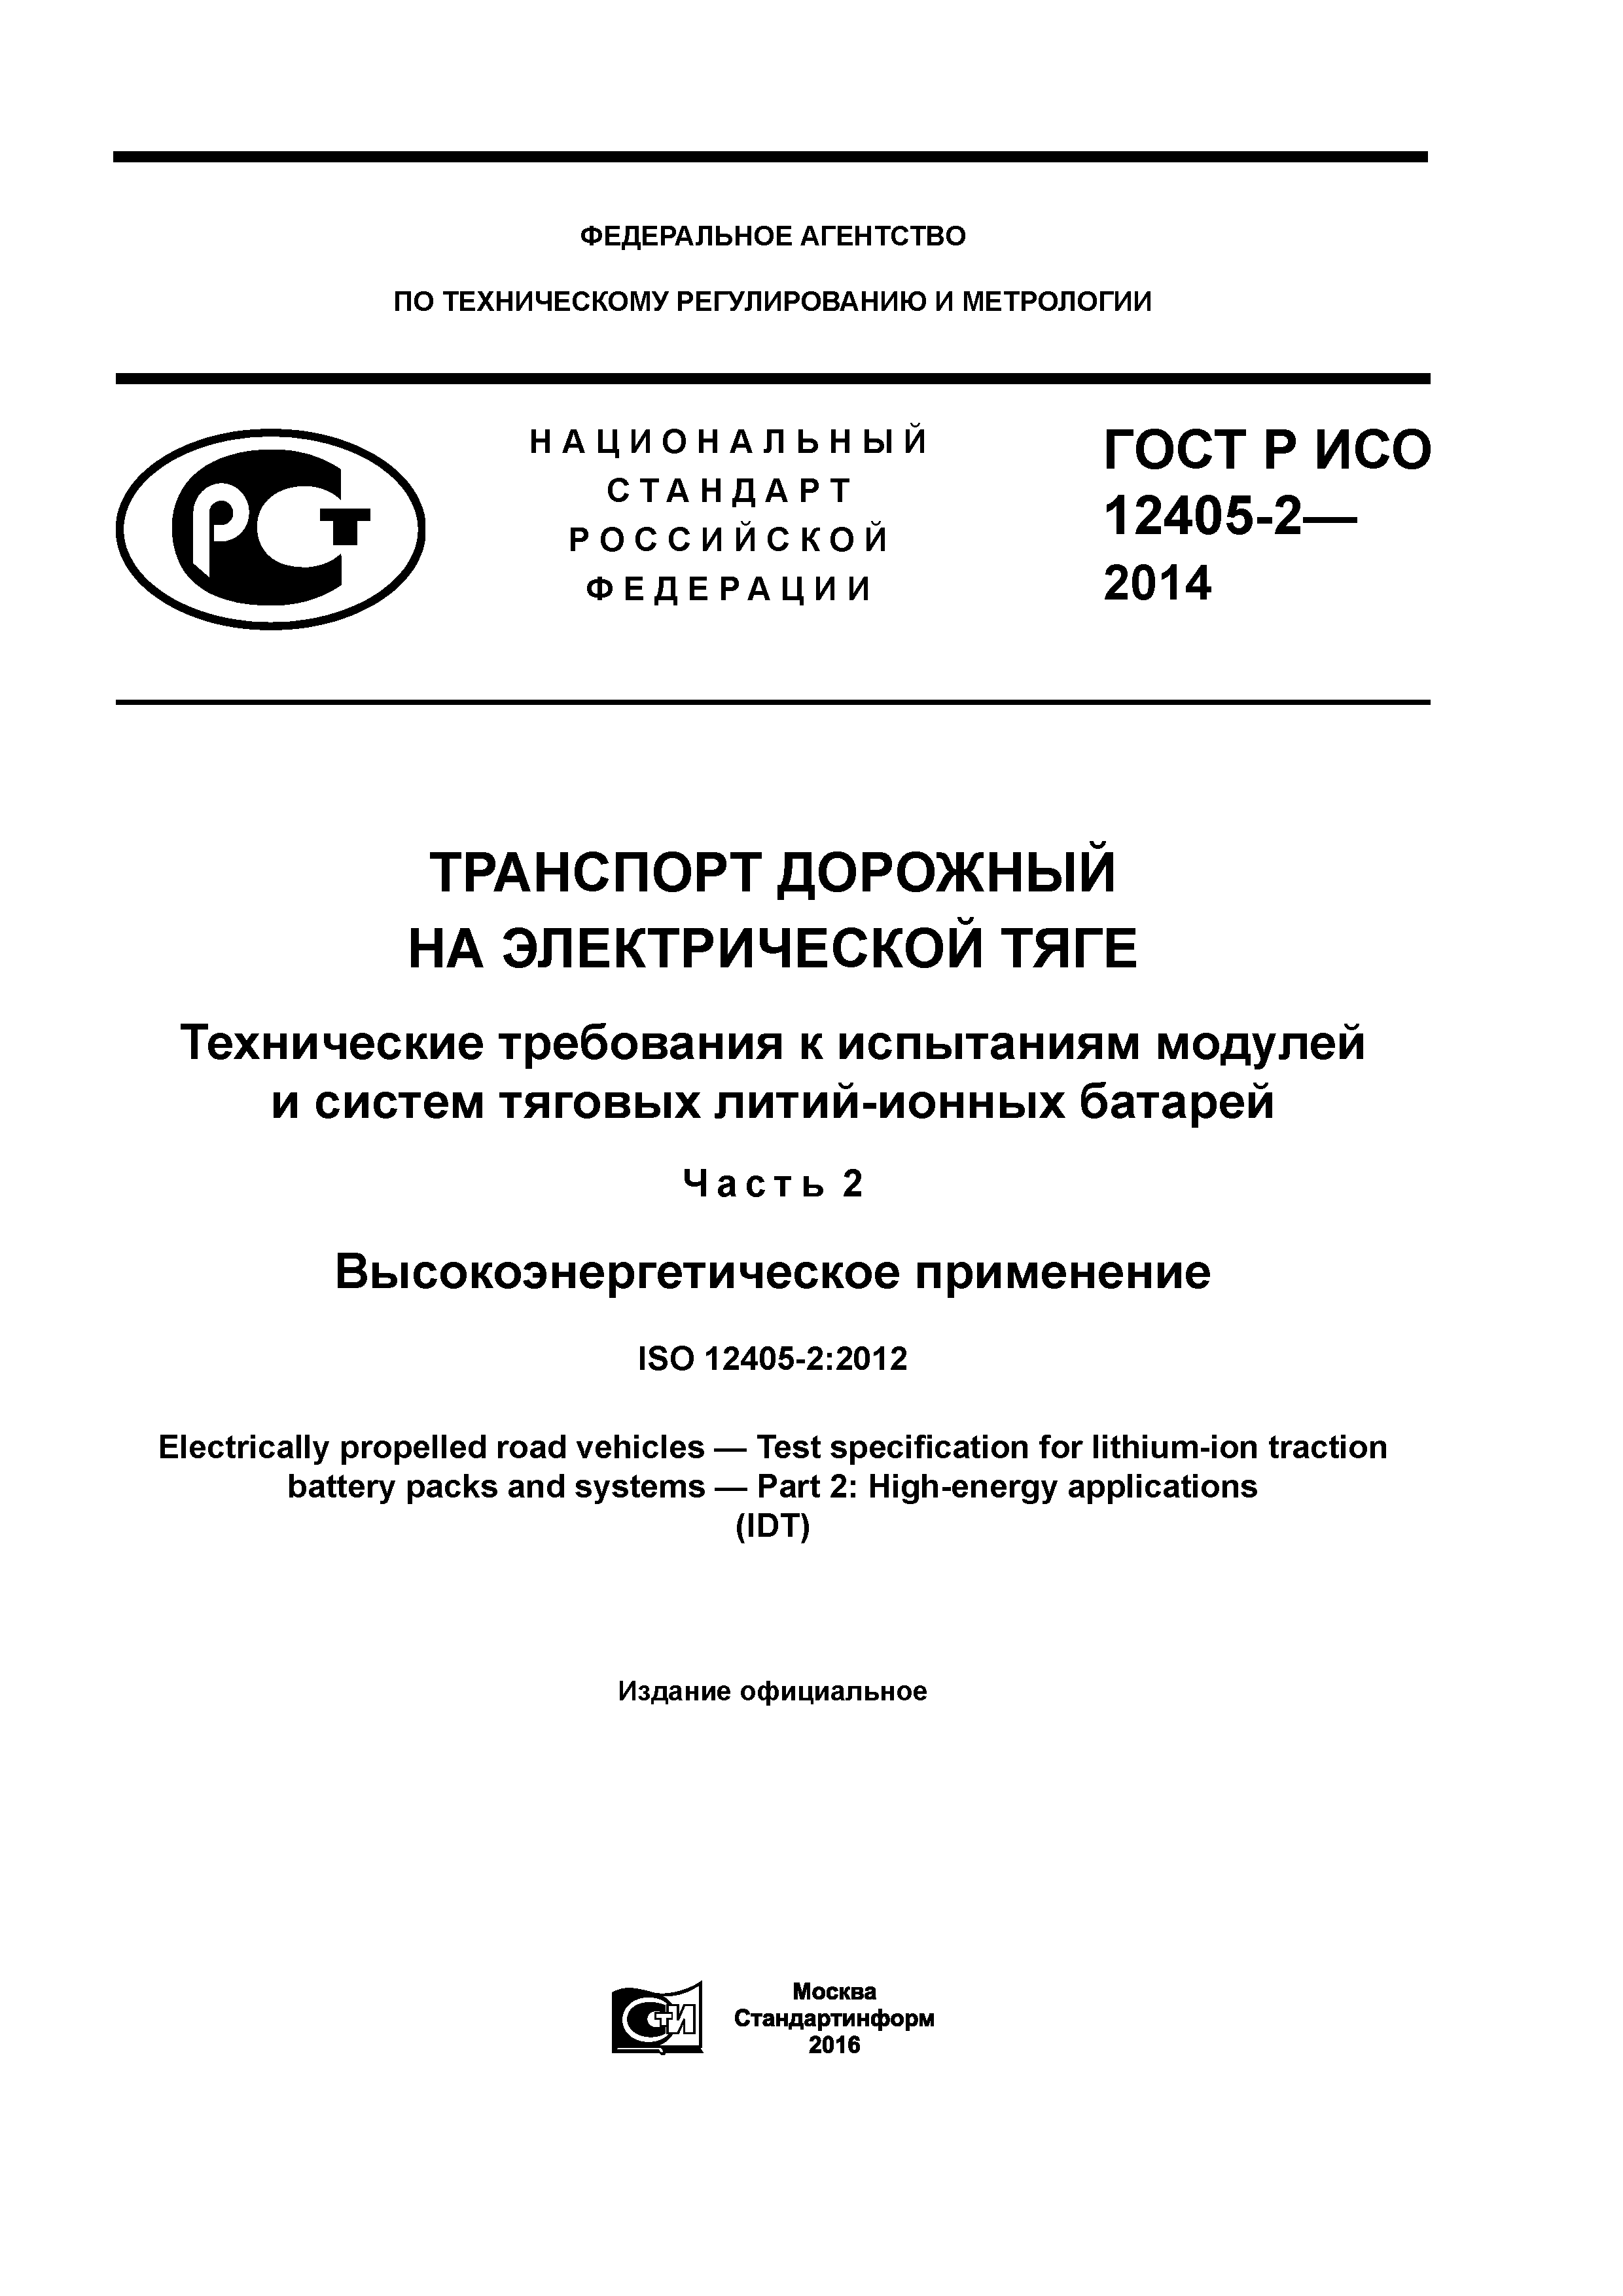 ГОСТ Р ИСО 12405-2-2014